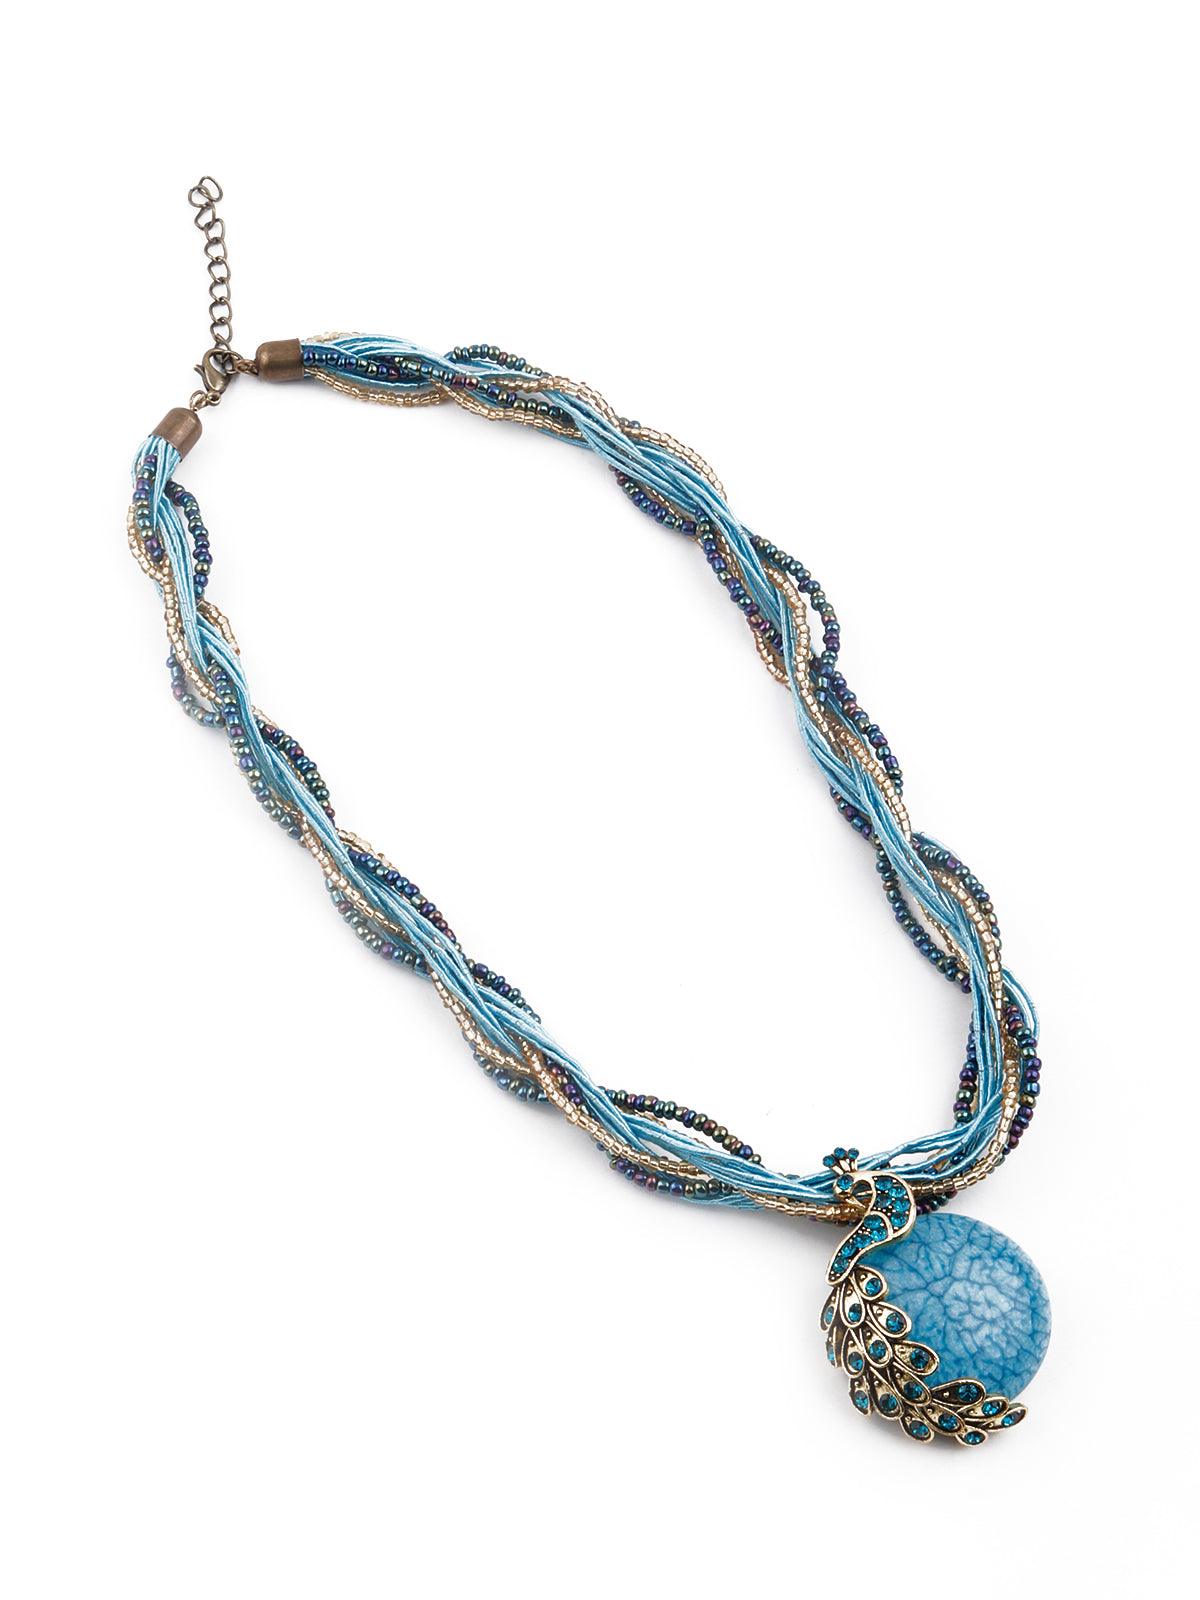 Gorgeous blue pendant necklace - Odette